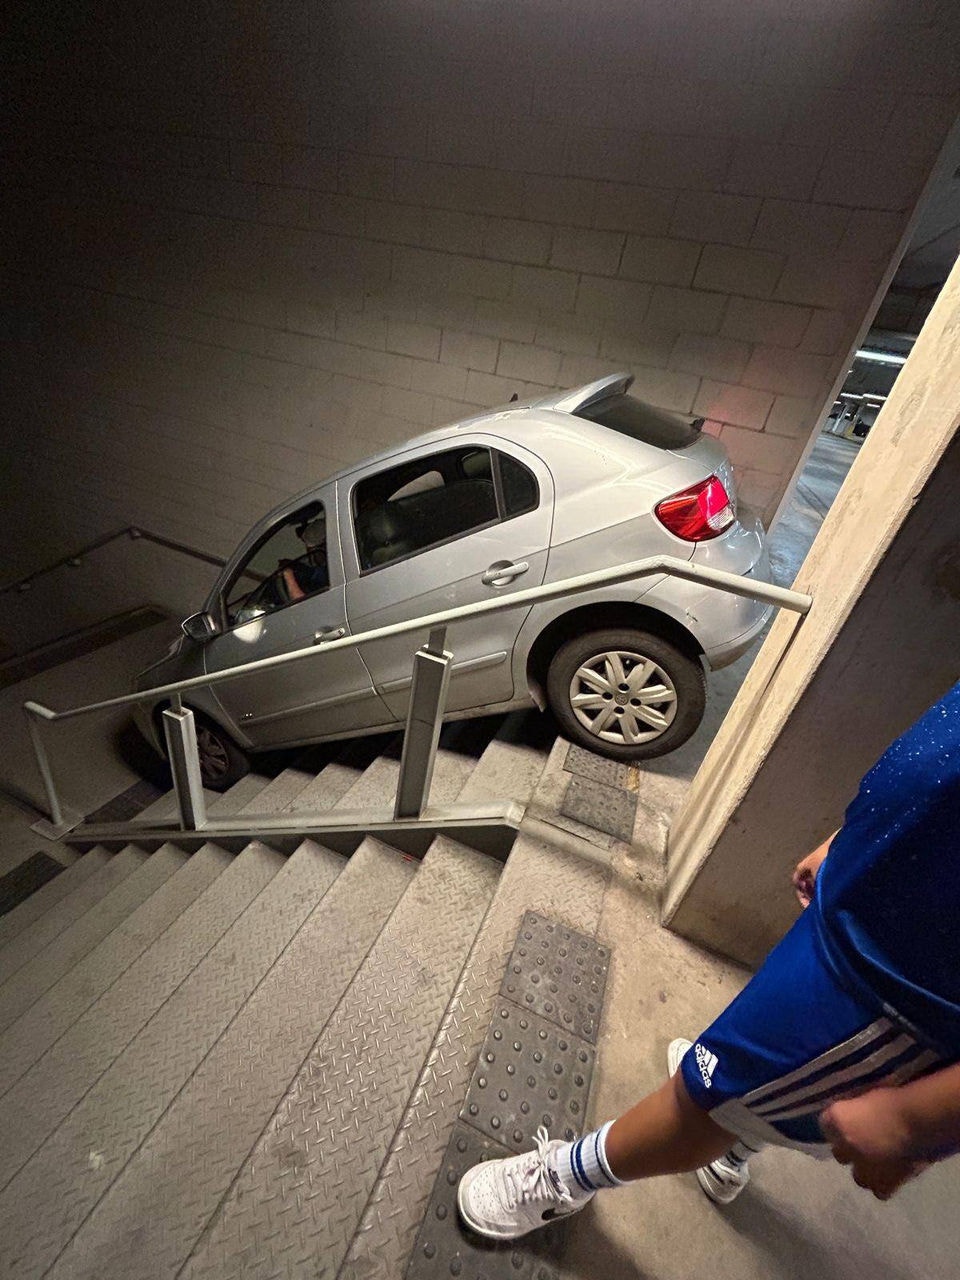 Fotos do carro preso na escadaria viralizaram nas redes sociais